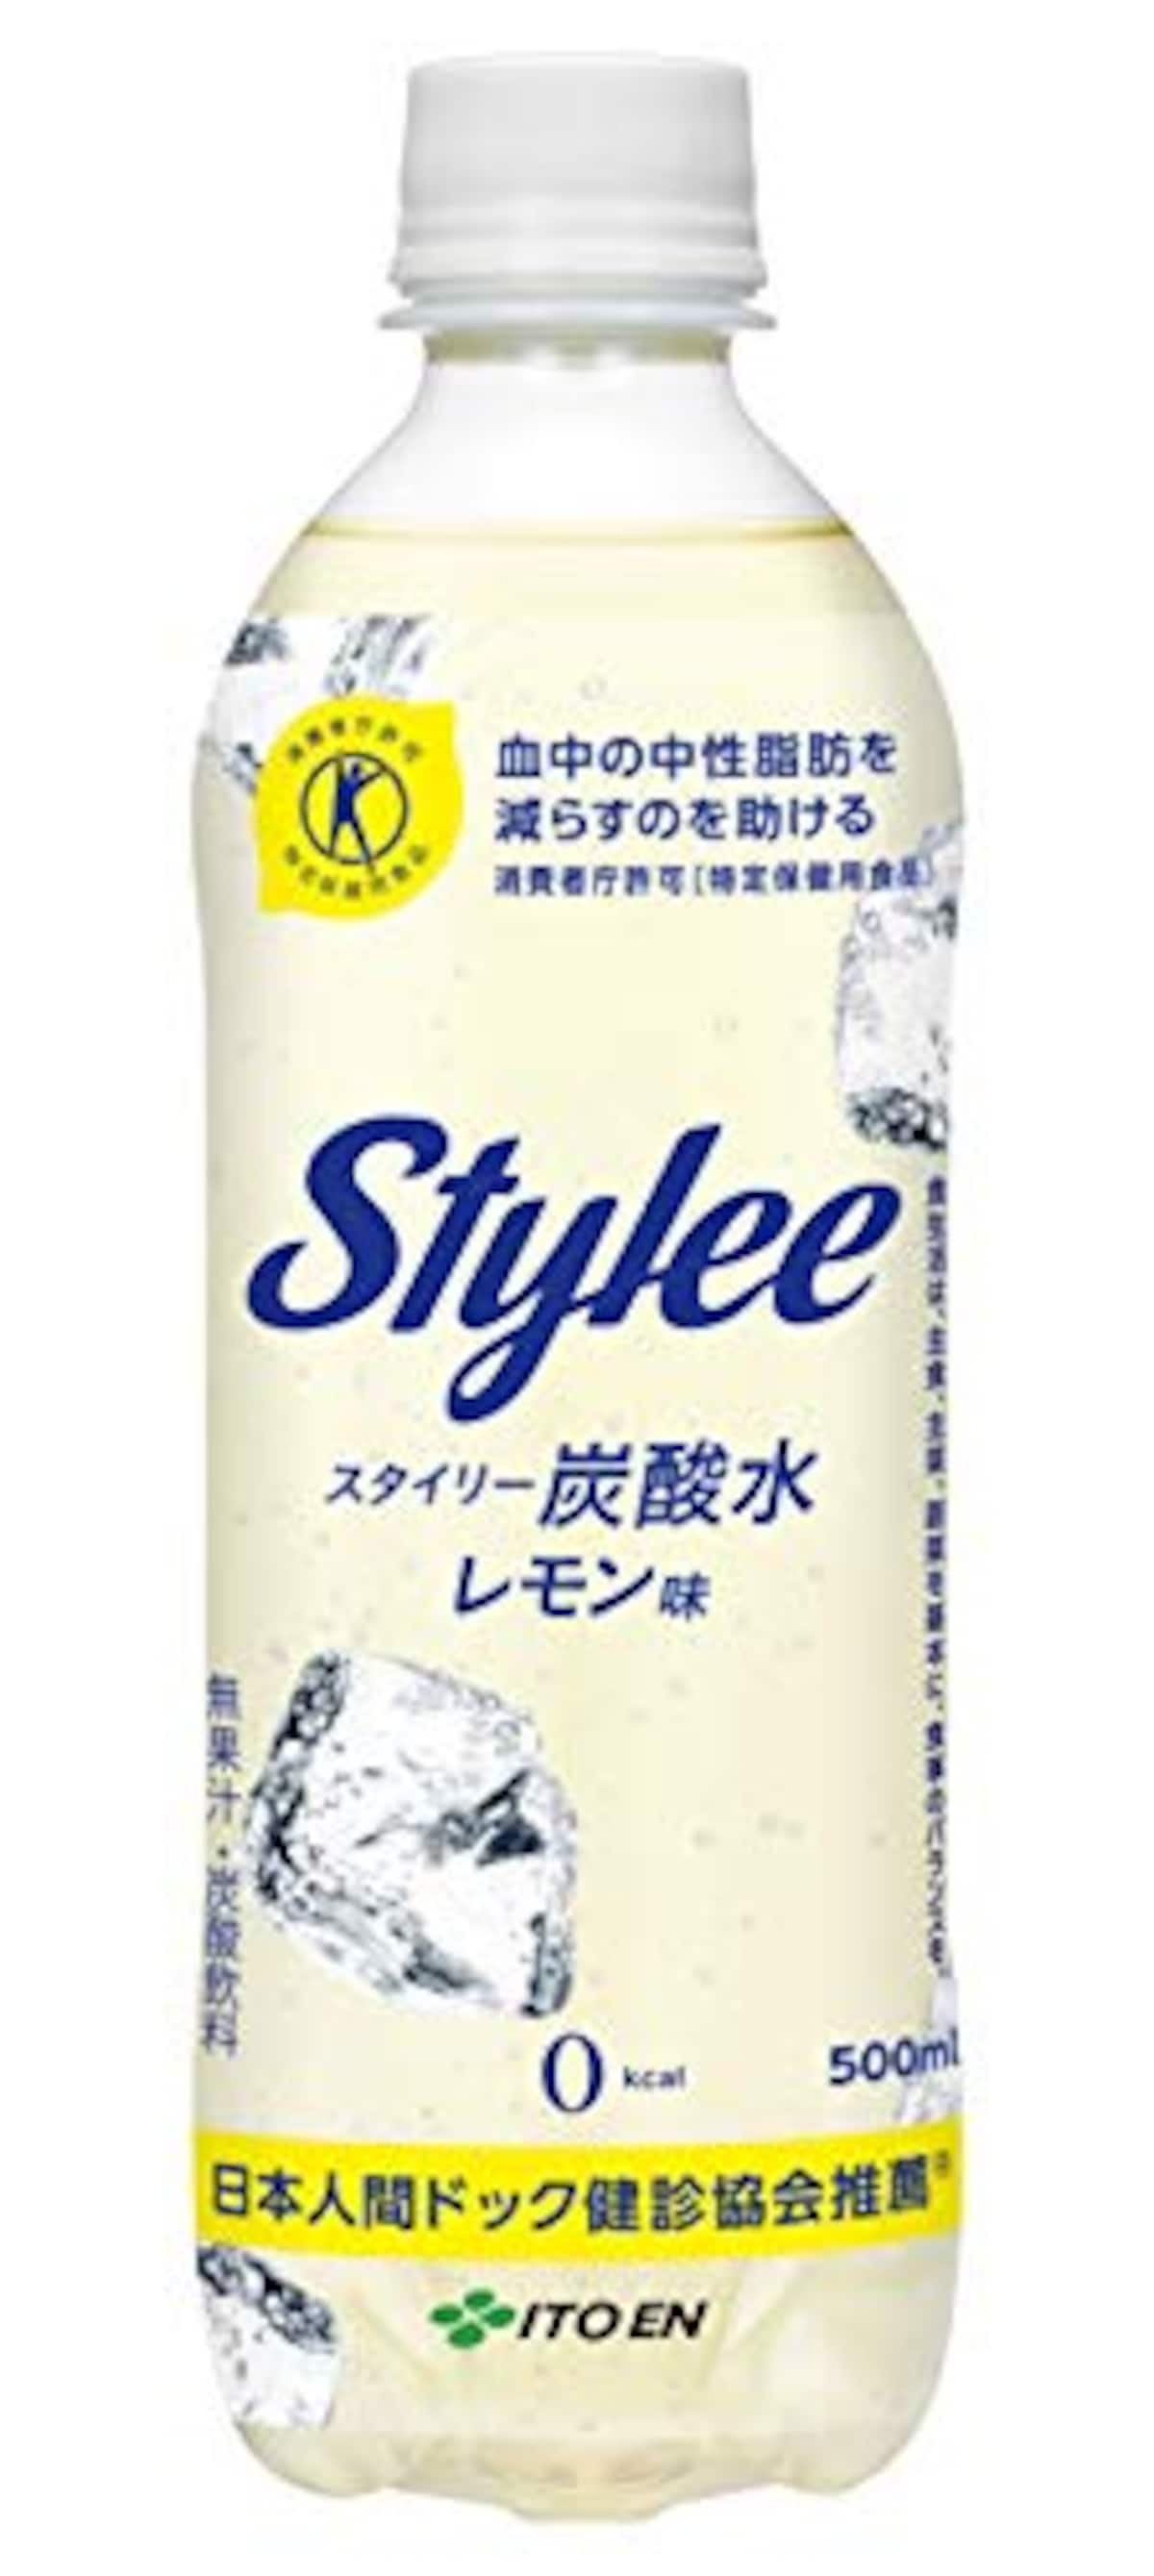 Stylee(スタイリー) 炭酸水 レモン味